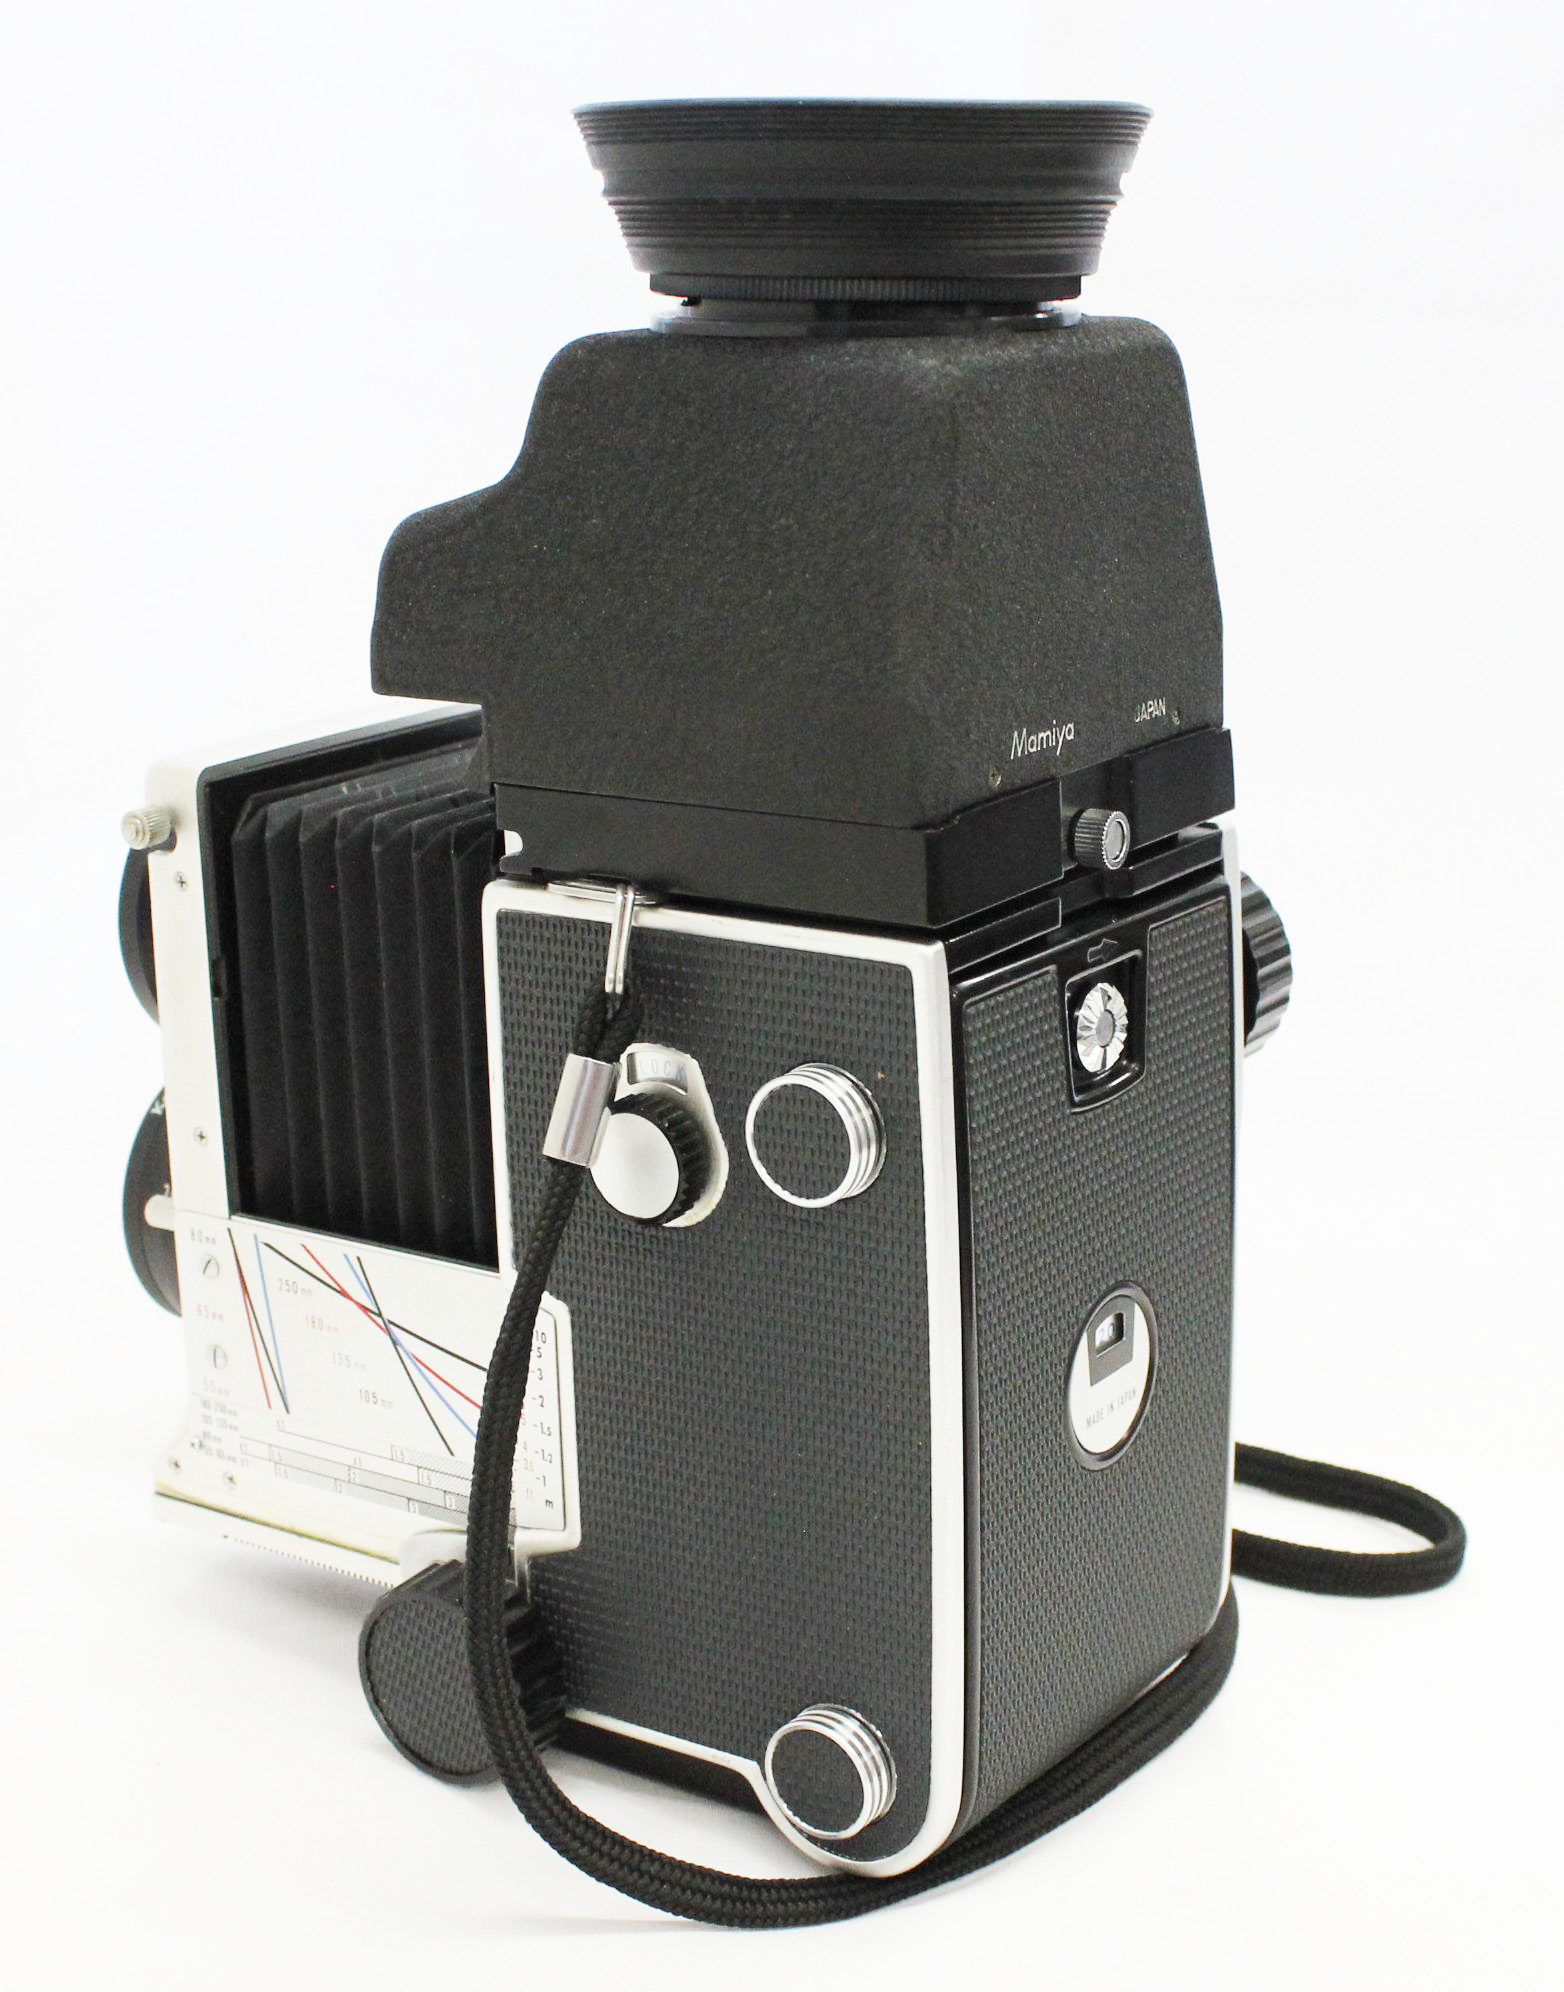 カメラ フィルムカメラ Mamiya C220 Pro TLR Medium Format Camera with 80mm F2.8 and CdS 